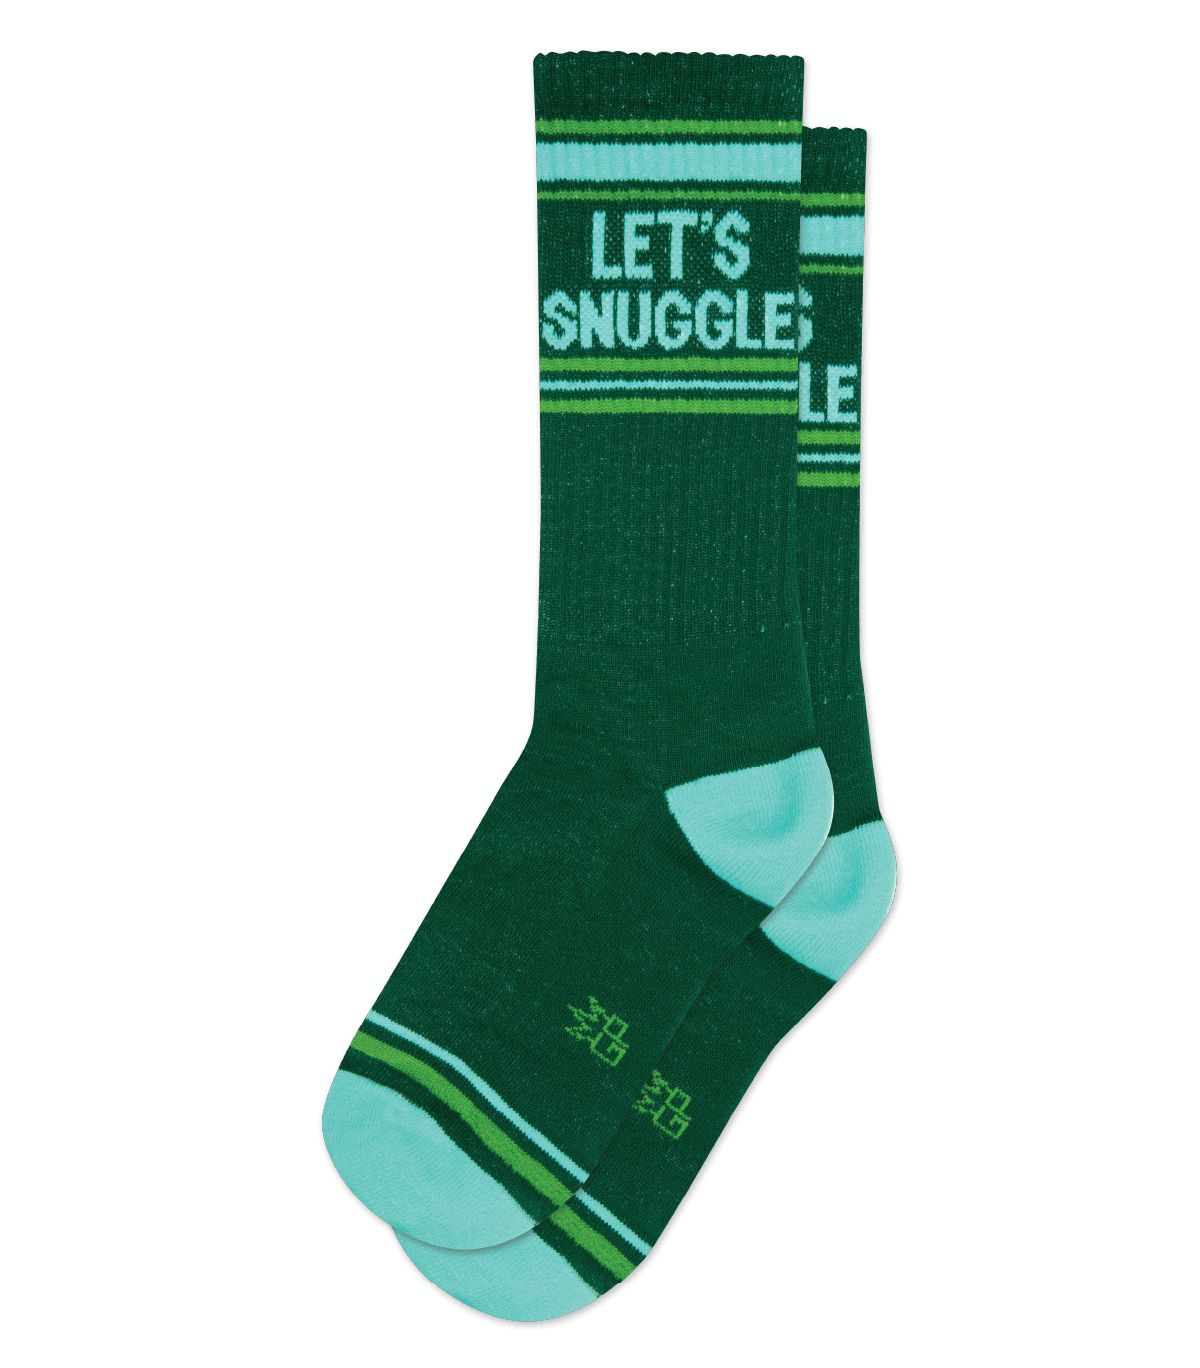 LET'S SNUGGLE gym socks